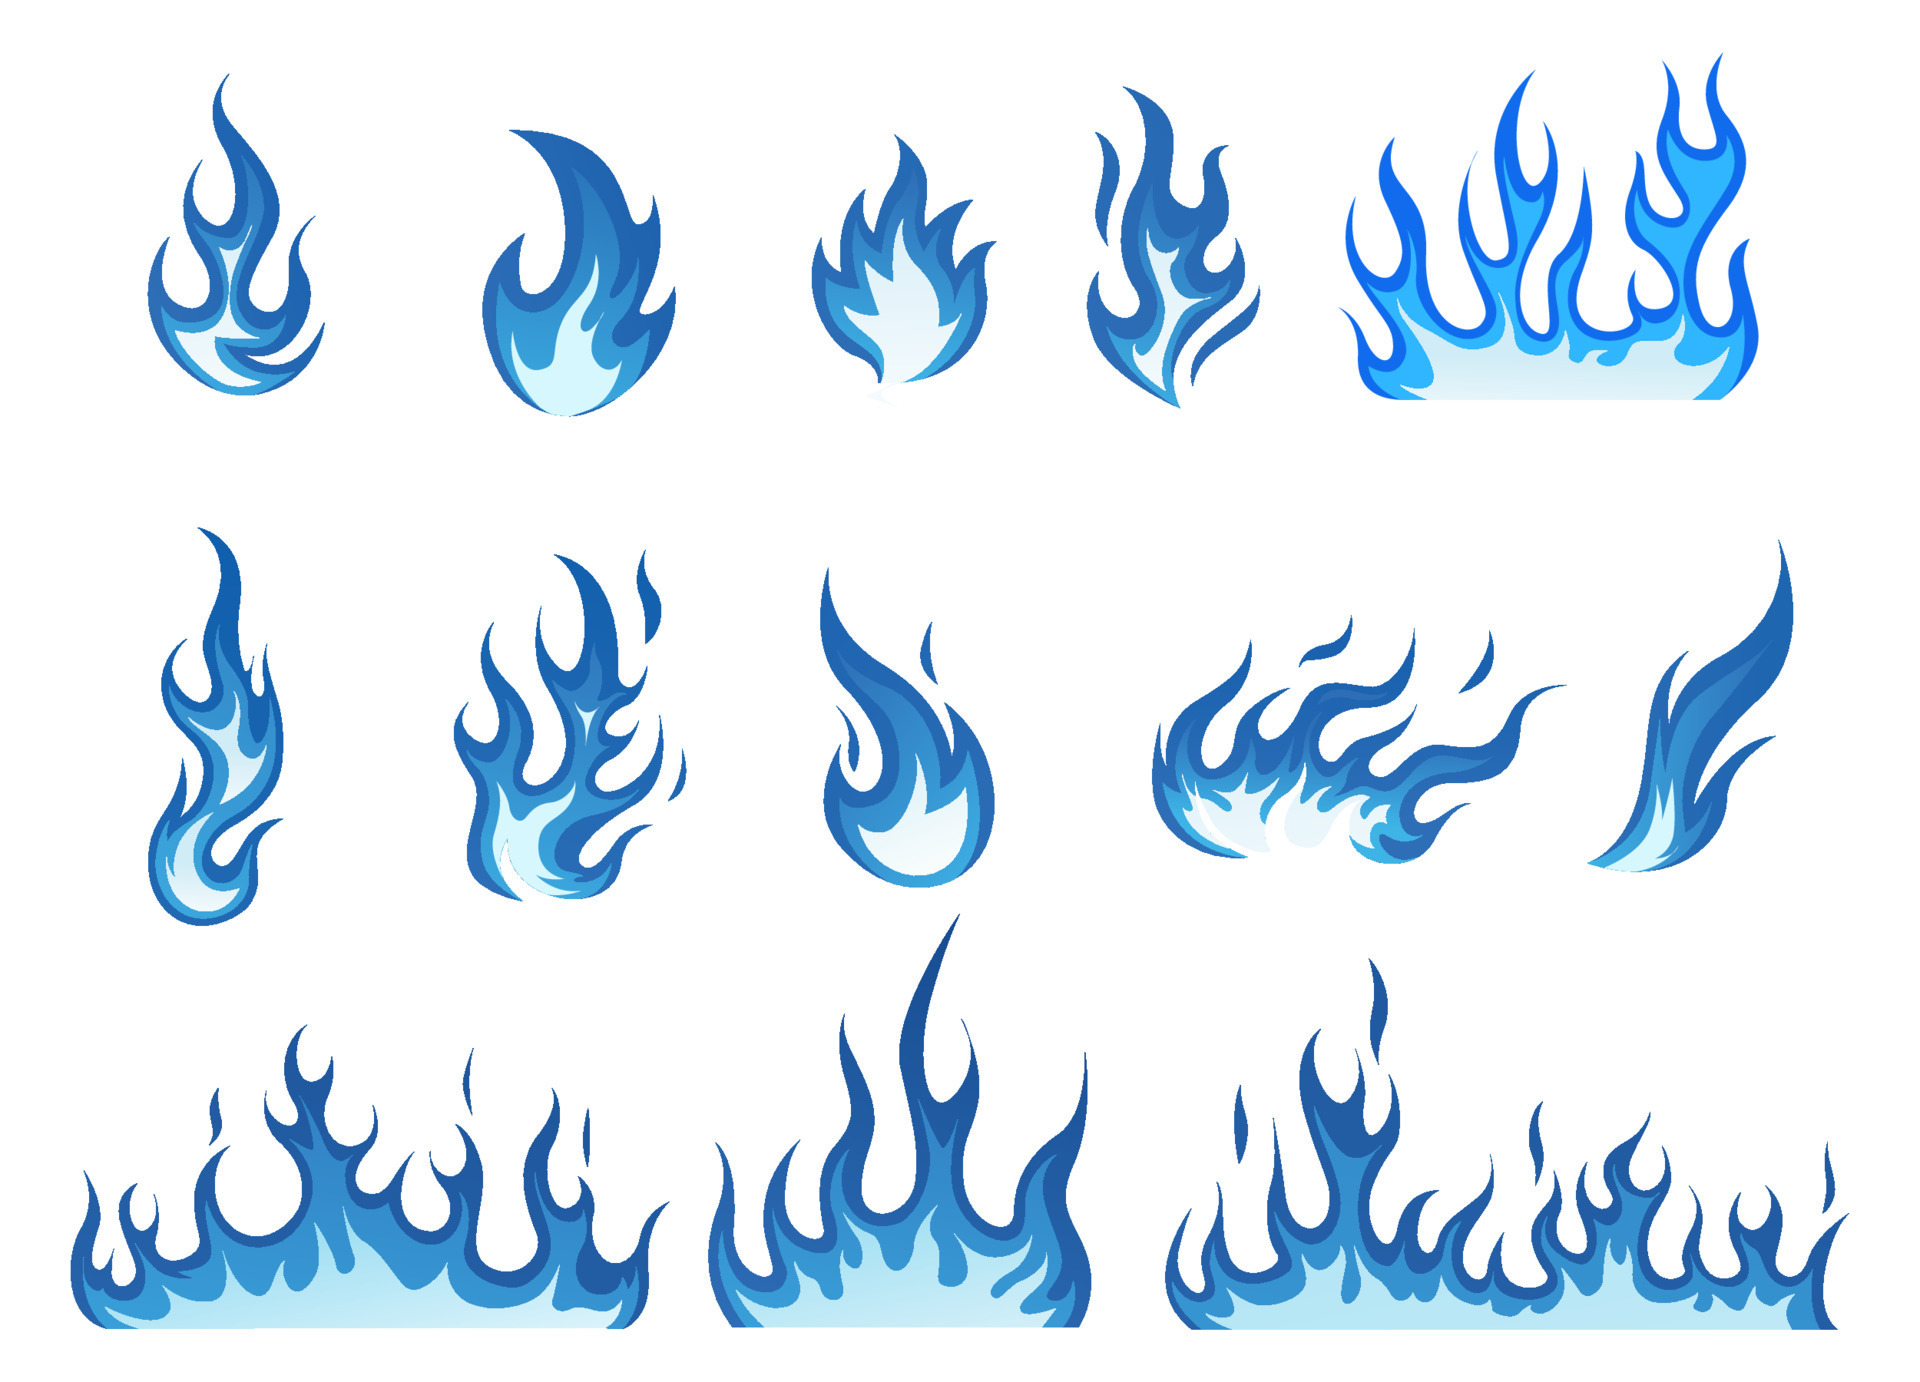 Elementos De ícones De Desenho Do Vetor De Vetor Do Fogo Azul Texturizado  Ilustração do Vetor - Ilustração de quente, flamejante: 169644966